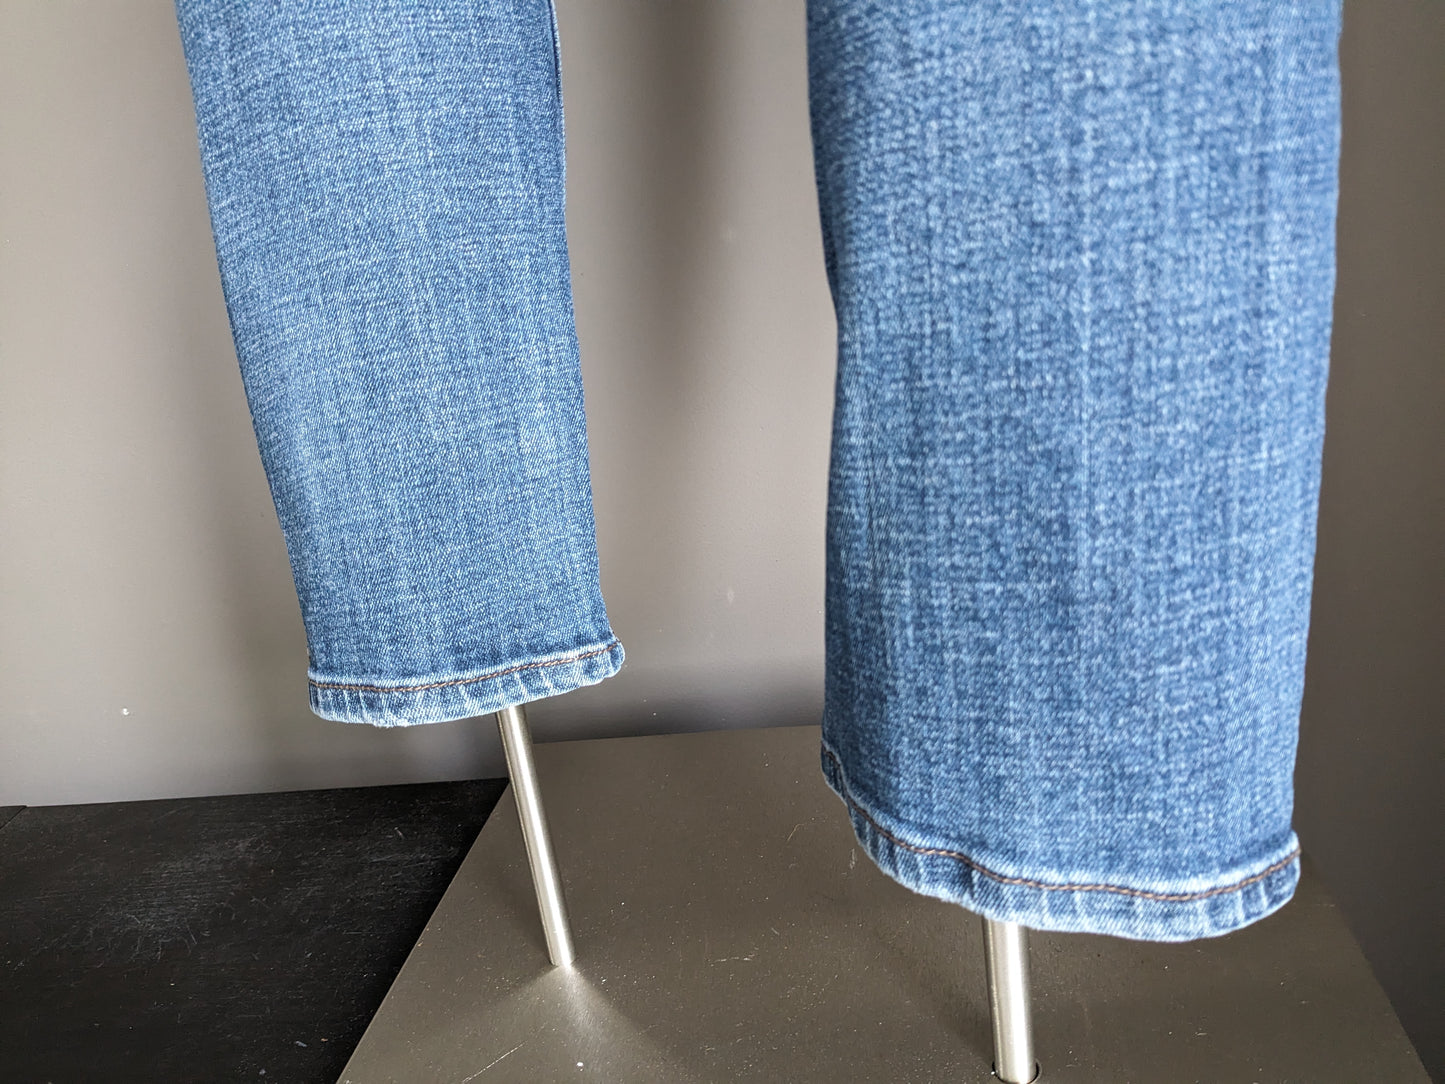 New Star jeans. Blauw gekleurd. Maat W34 - L32. stretch.